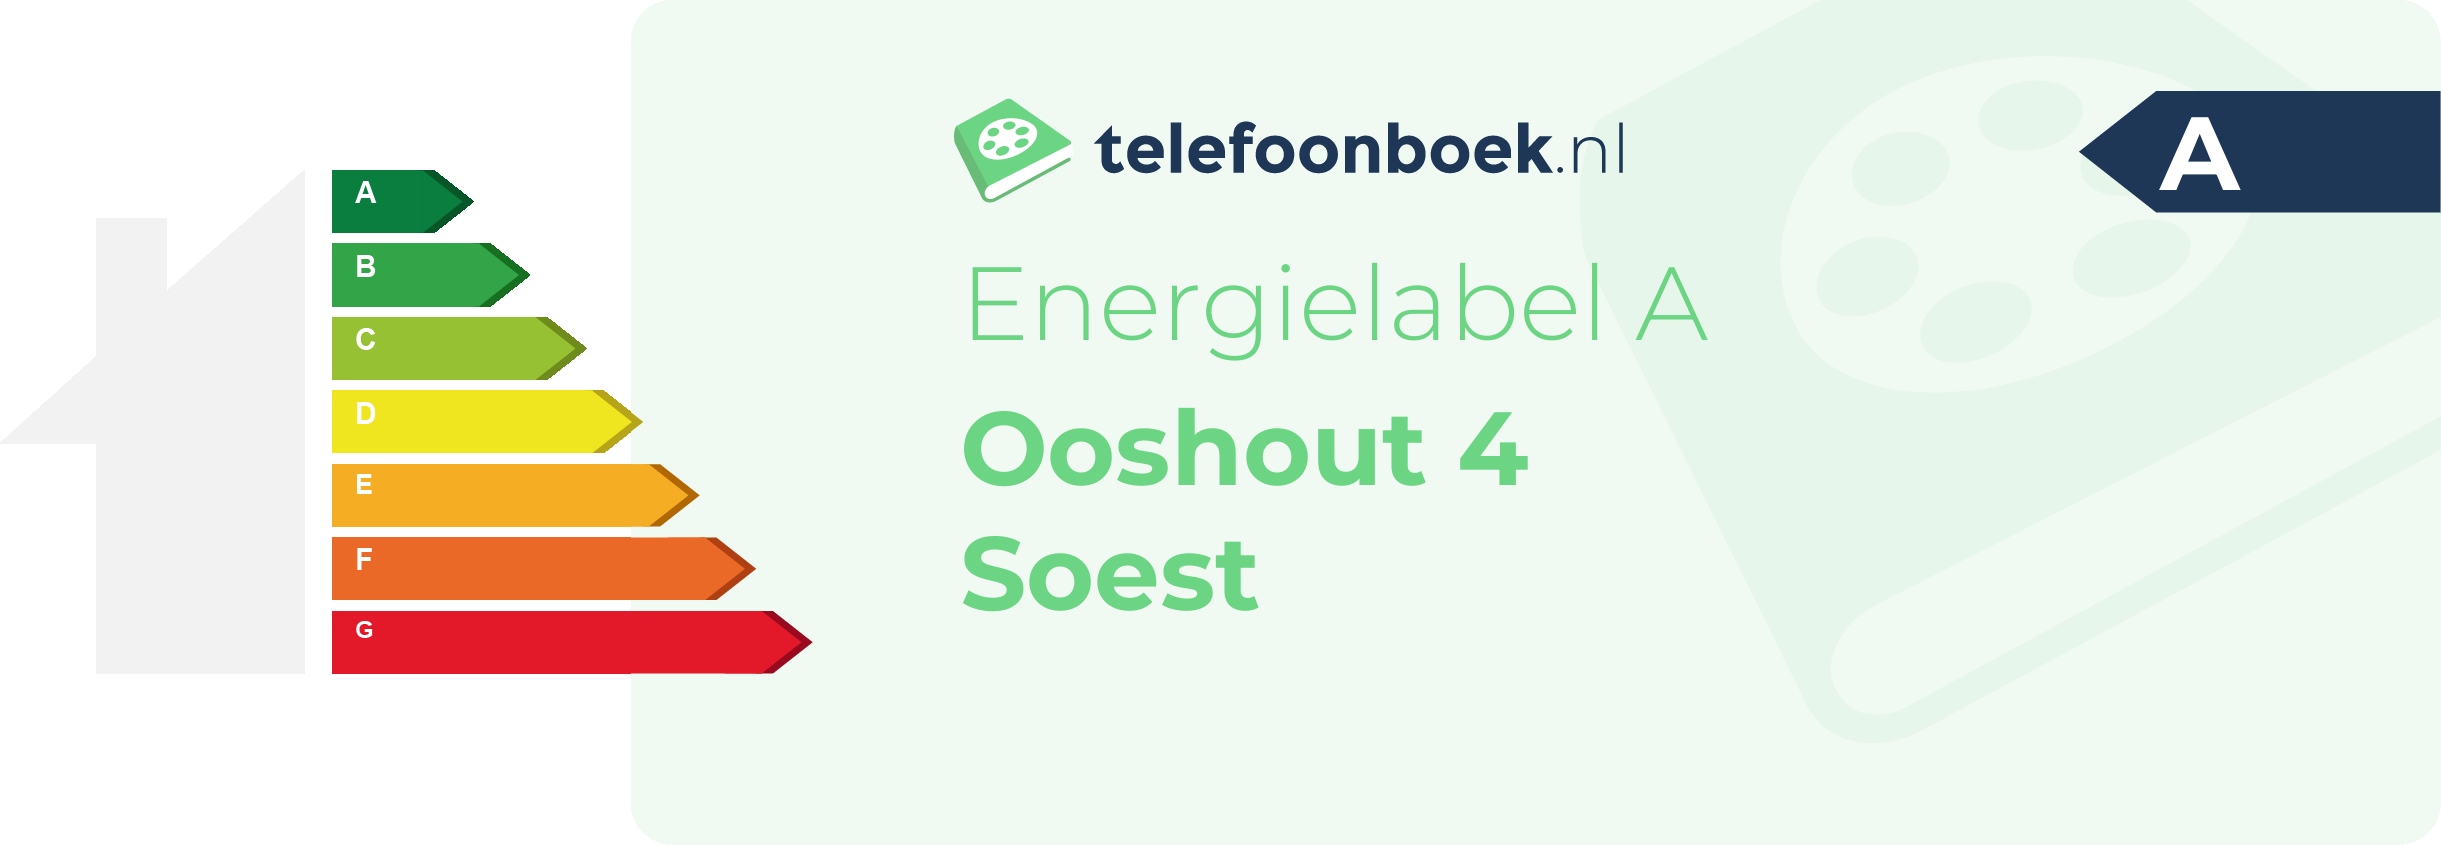 Energielabel Ooshout 4 Soest